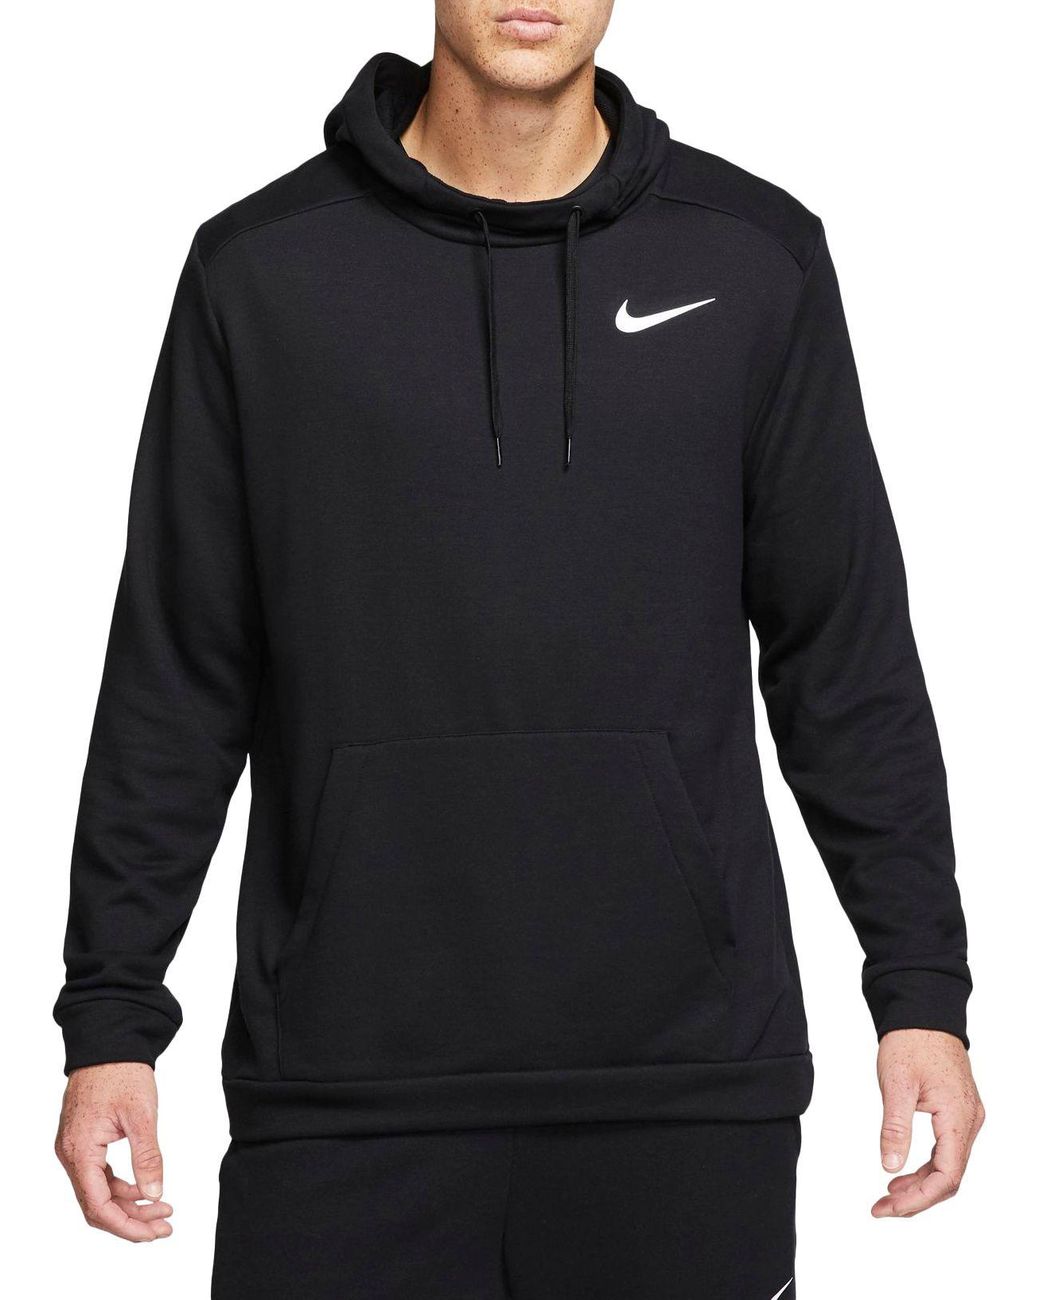 Nike Fleece Dri-fit Training Hoodie in Black for Men - Lyst